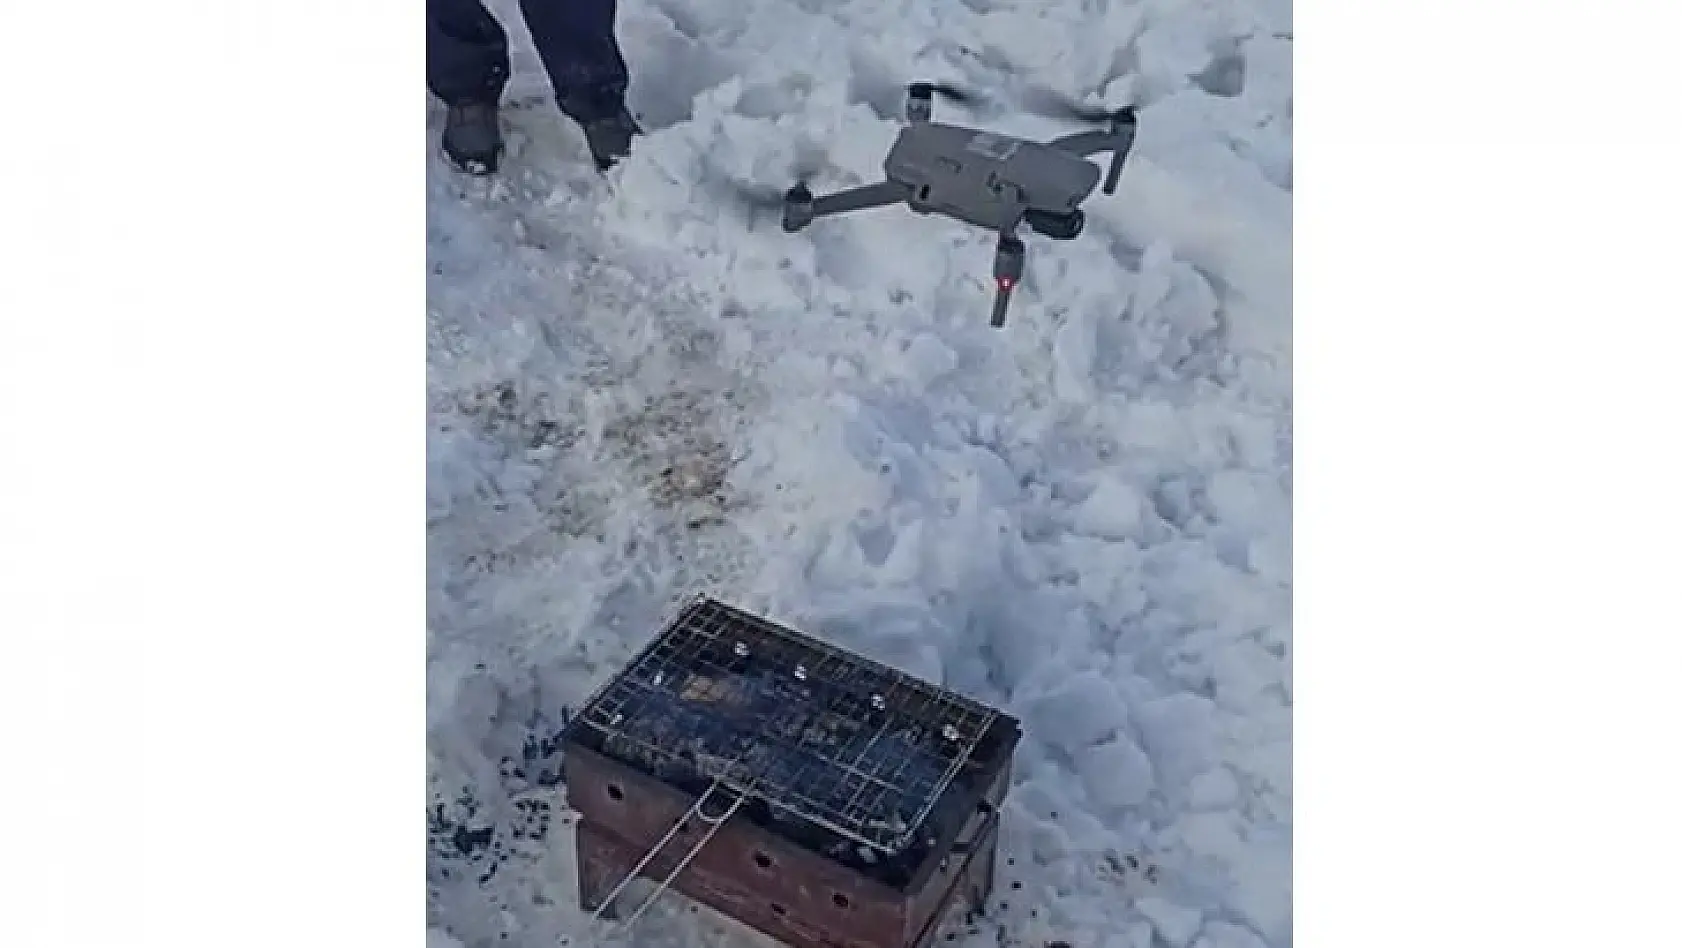 Yelpazeyi Unutunca Mangalı Drone İle Yaktı